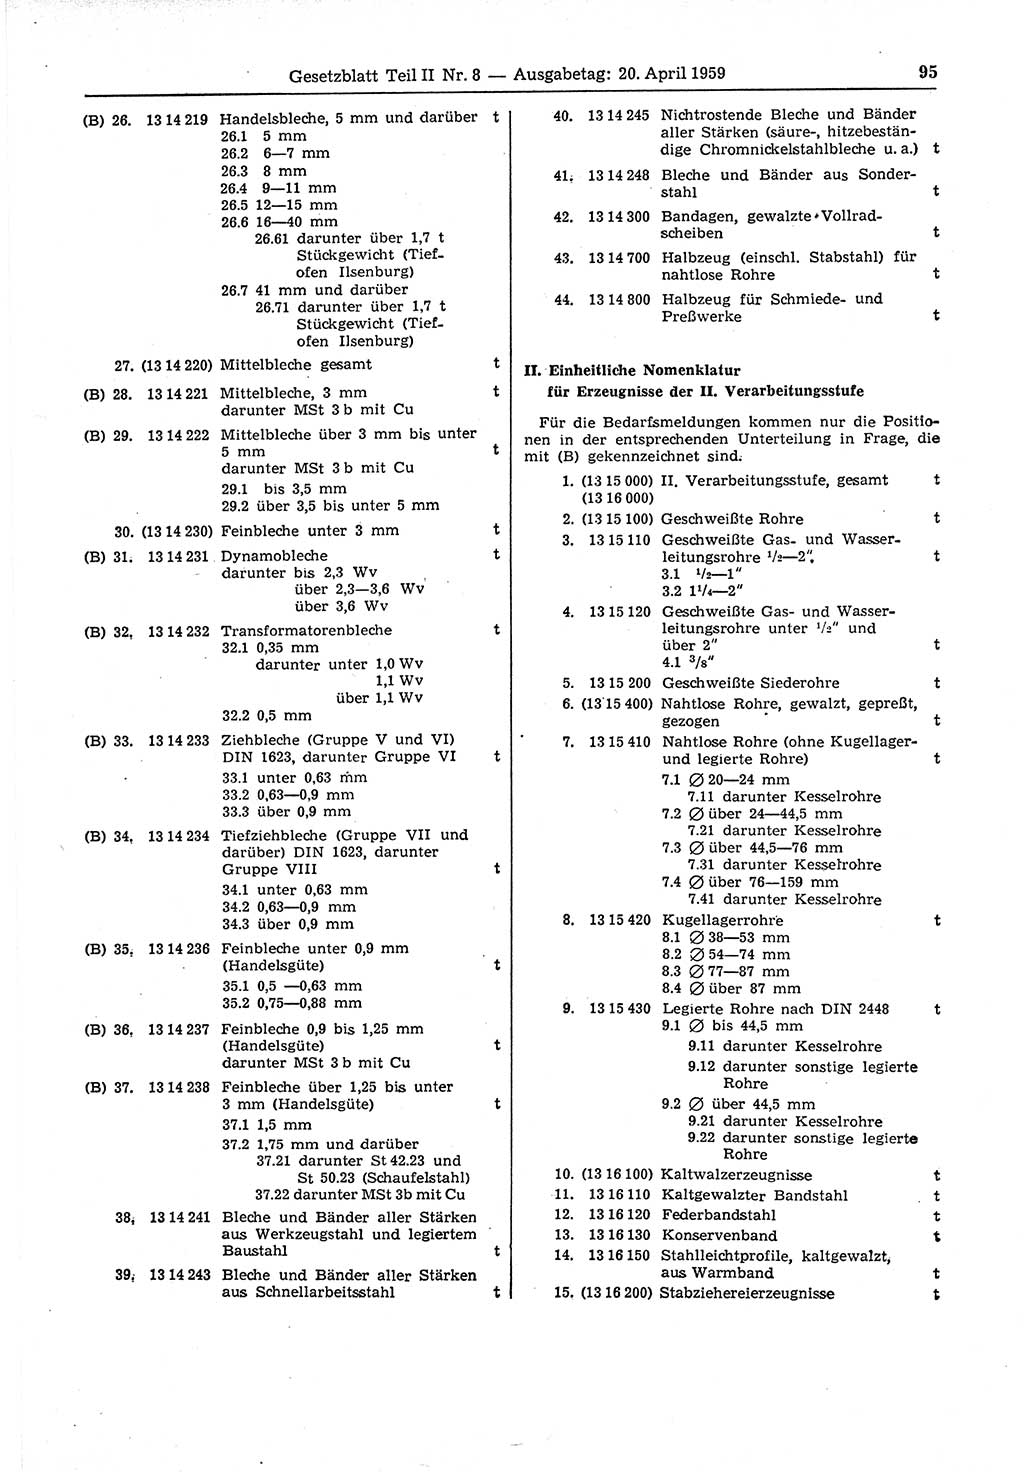 Gesetzblatt (GBl.) der Deutschen Demokratischen Republik (DDR) Teil ⅠⅠ 1959, Seite 95 (GBl. DDR ⅠⅠ 1959, S. 95)